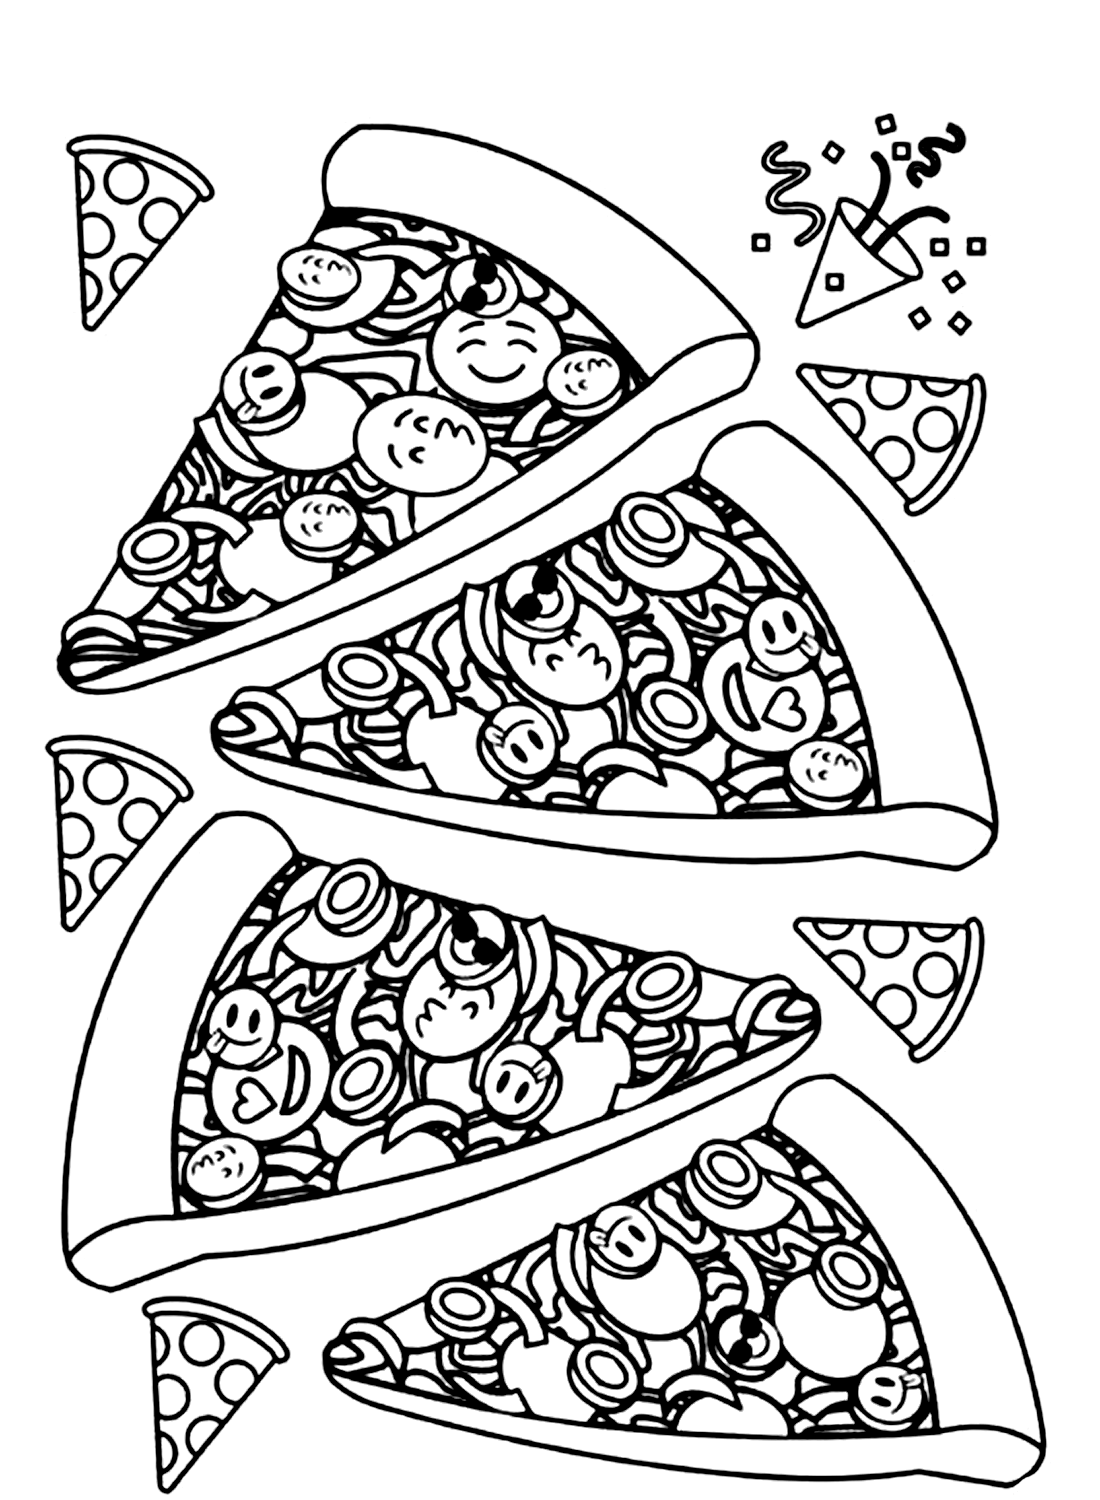 Délicieuse feuille de pizza